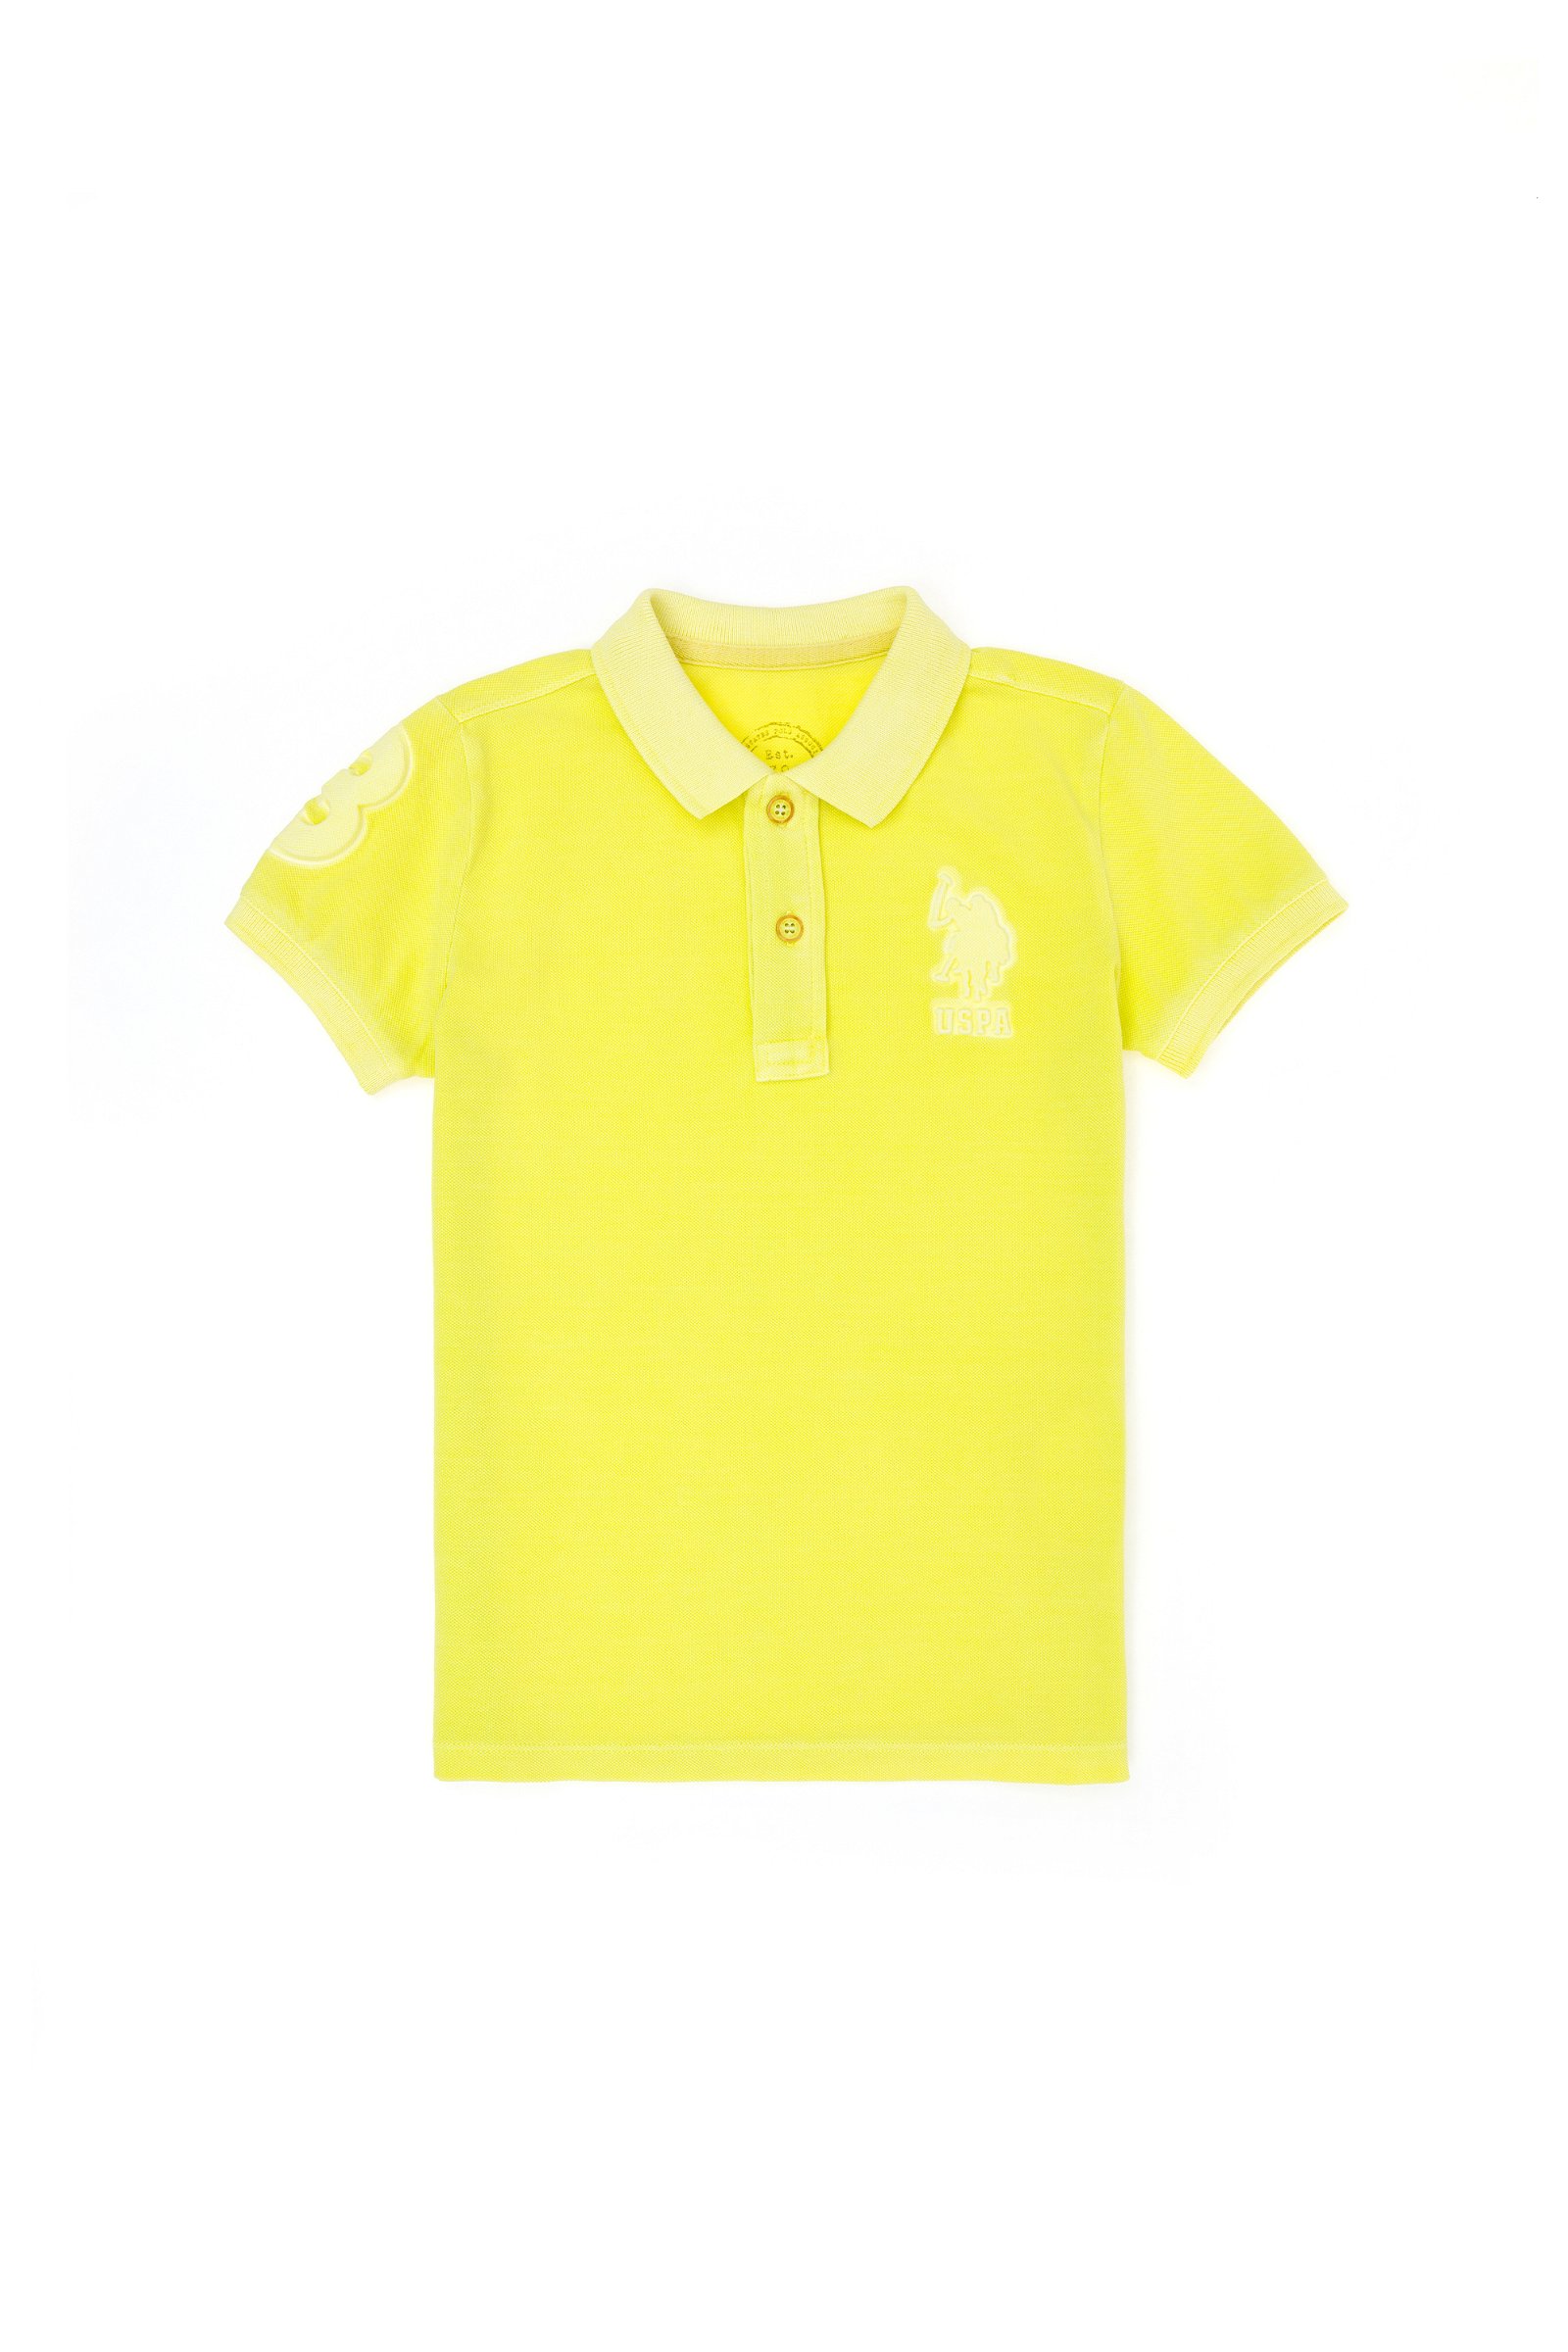 تی شرت یقه پولو لیمویی  استاندارد فیت  پسرانه یو اس پولو | US POLO ASSN